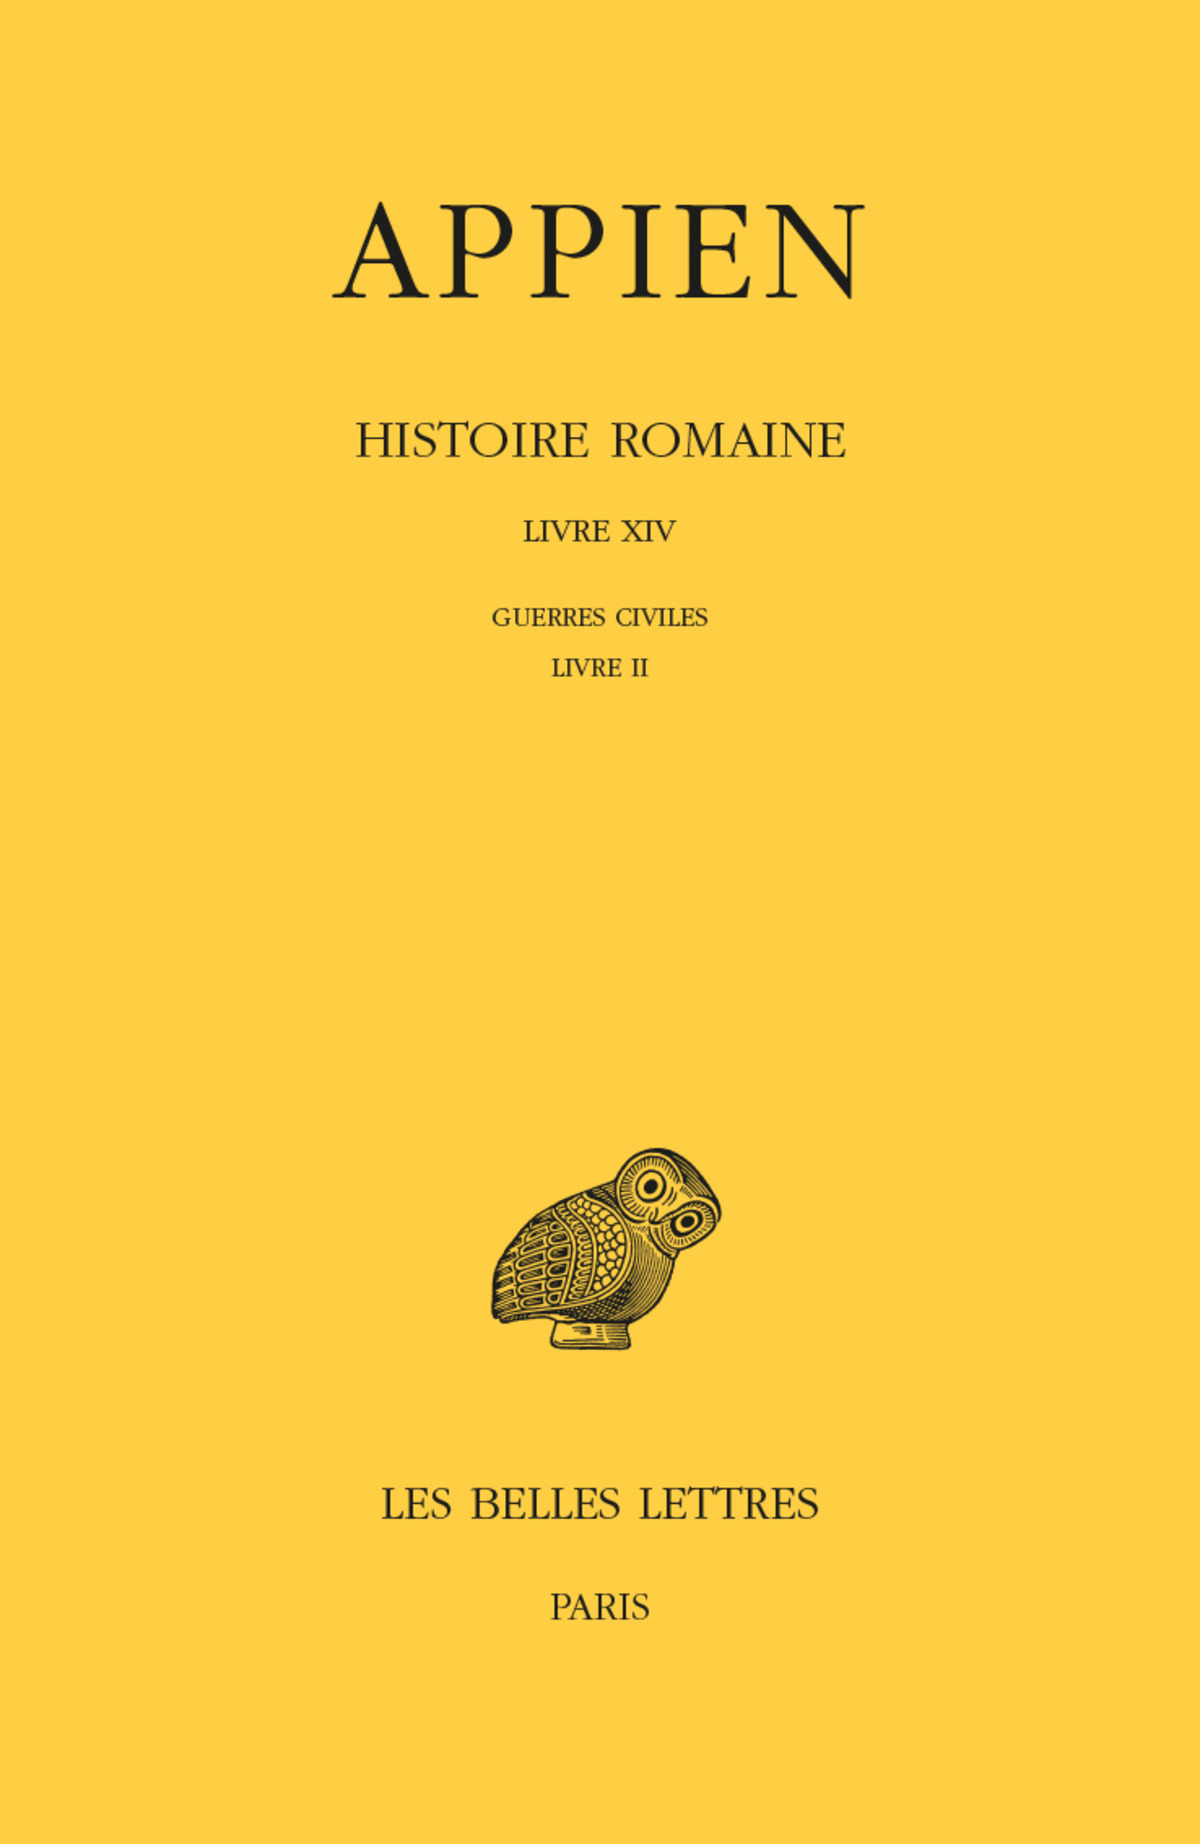 Histoire romaine. Tome IX, Livre XIV : Guerres civiles, Livre II